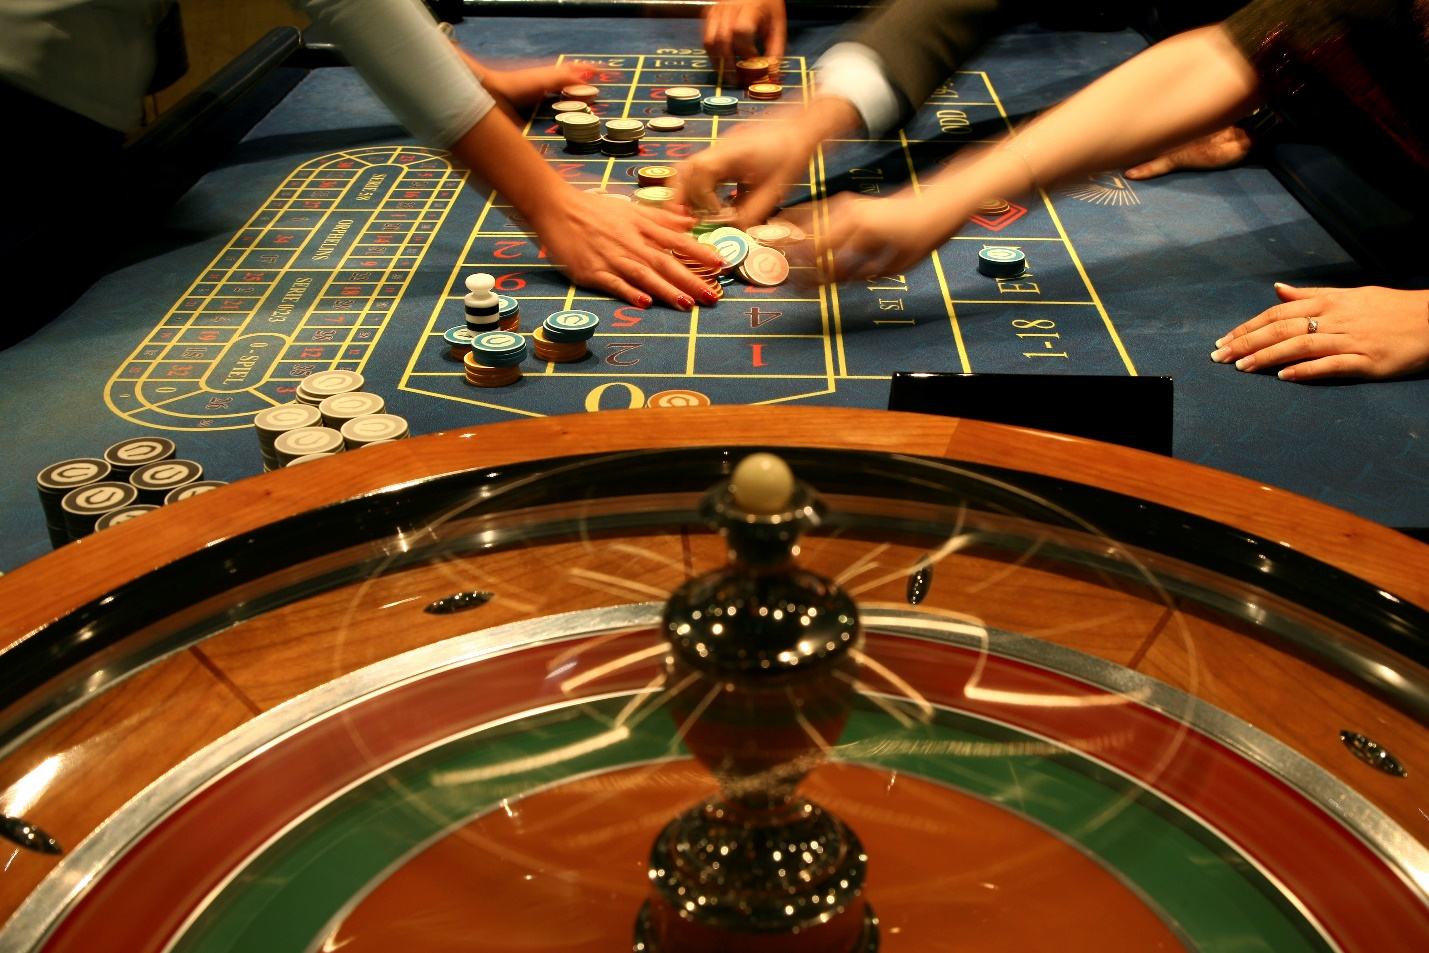 Atlantic City Casino Gambling Age